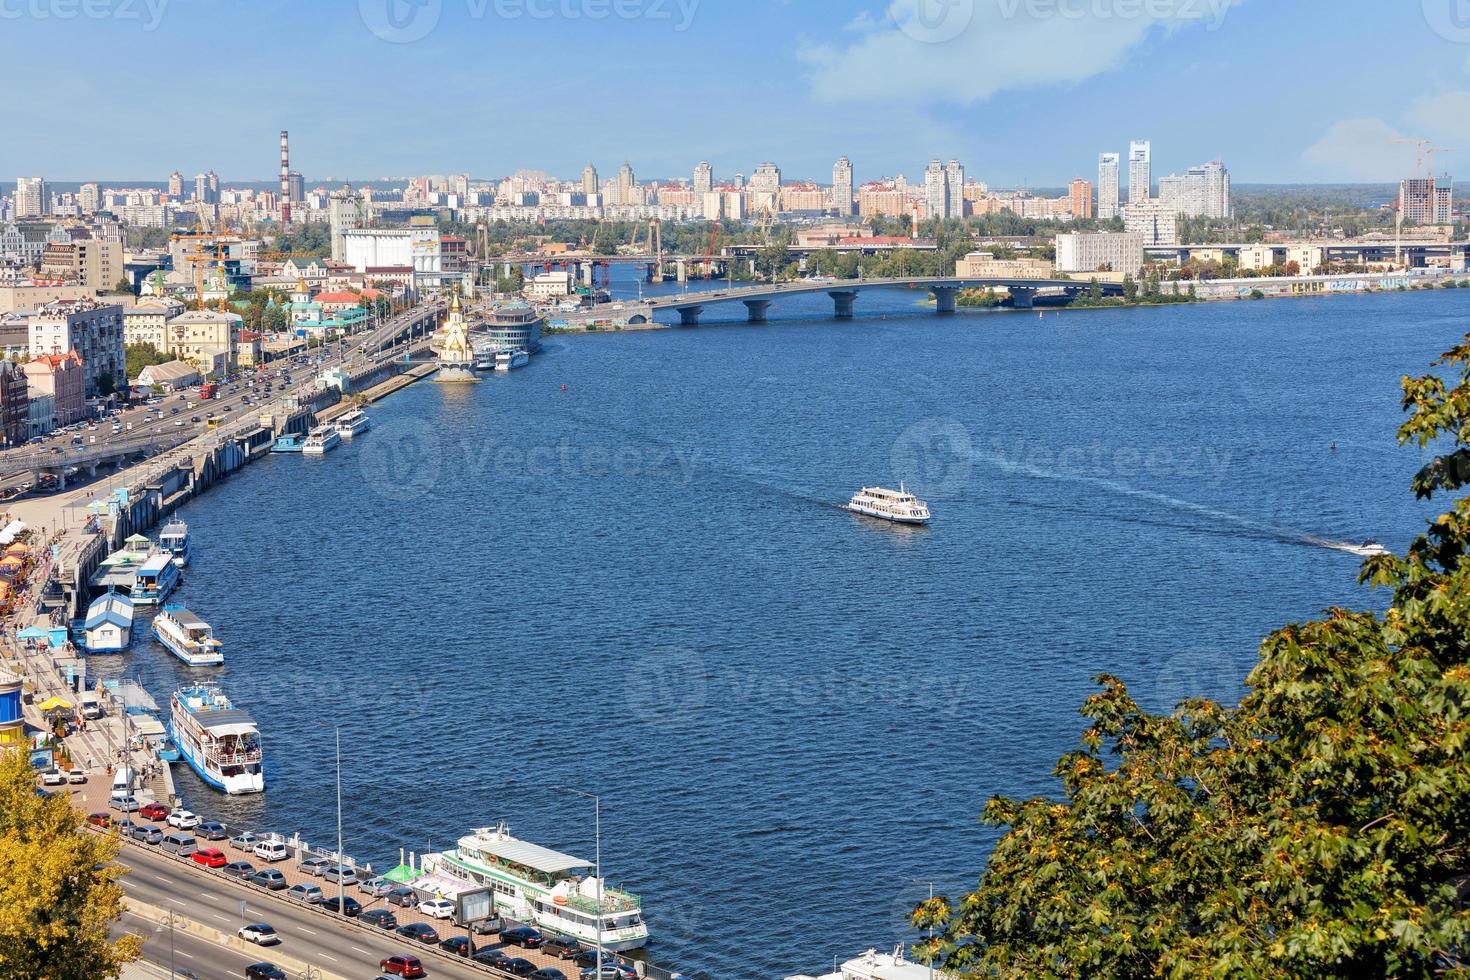 un paisaje de verano en kyiv con vista al terraplén del dnipro en el antiguo distrito de podil, una estación fluvial, muelles, tranvías fluviales y embarcaciones de recreo.30.08.20, kyiv, ucrania. foto